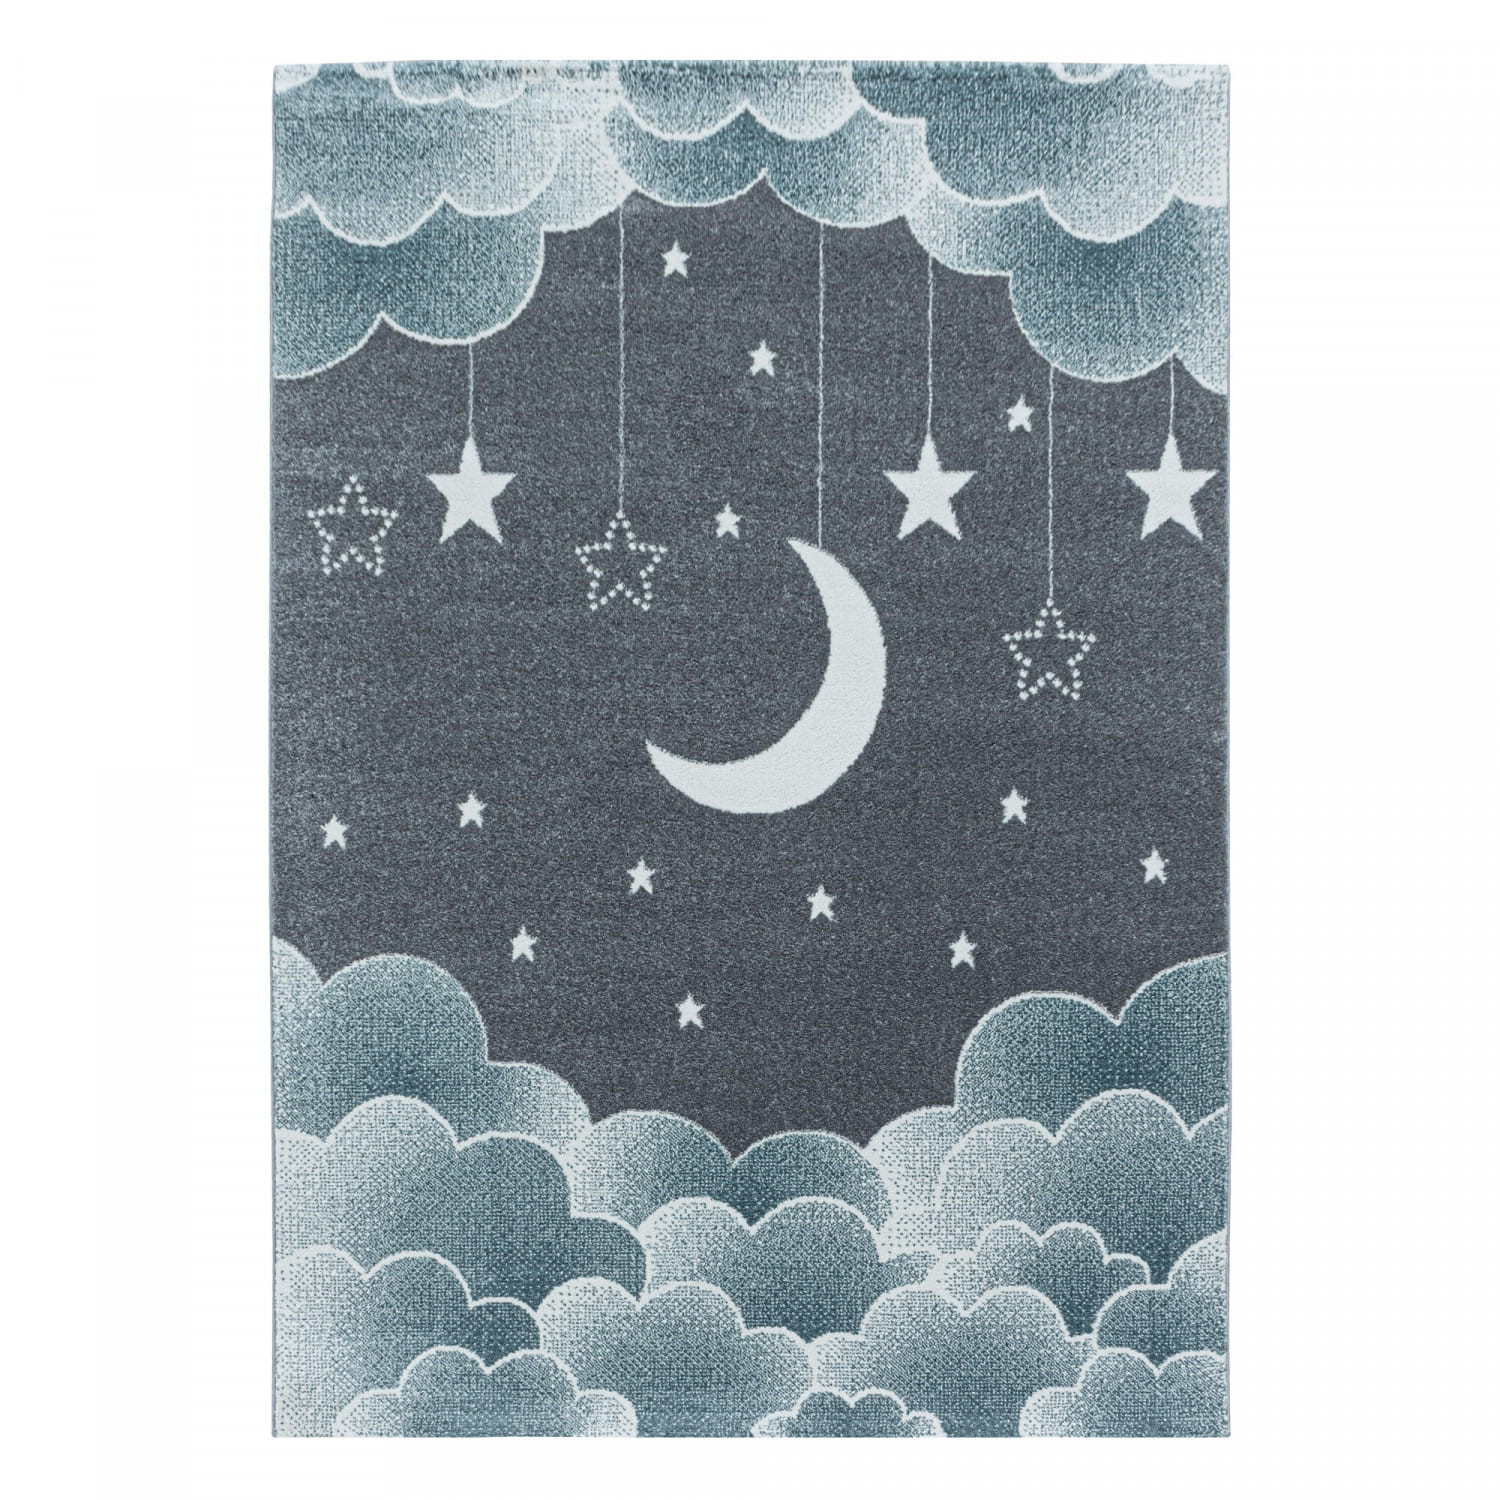 Detský koberec Funny mesiac nad oblakmi modrý / sivý